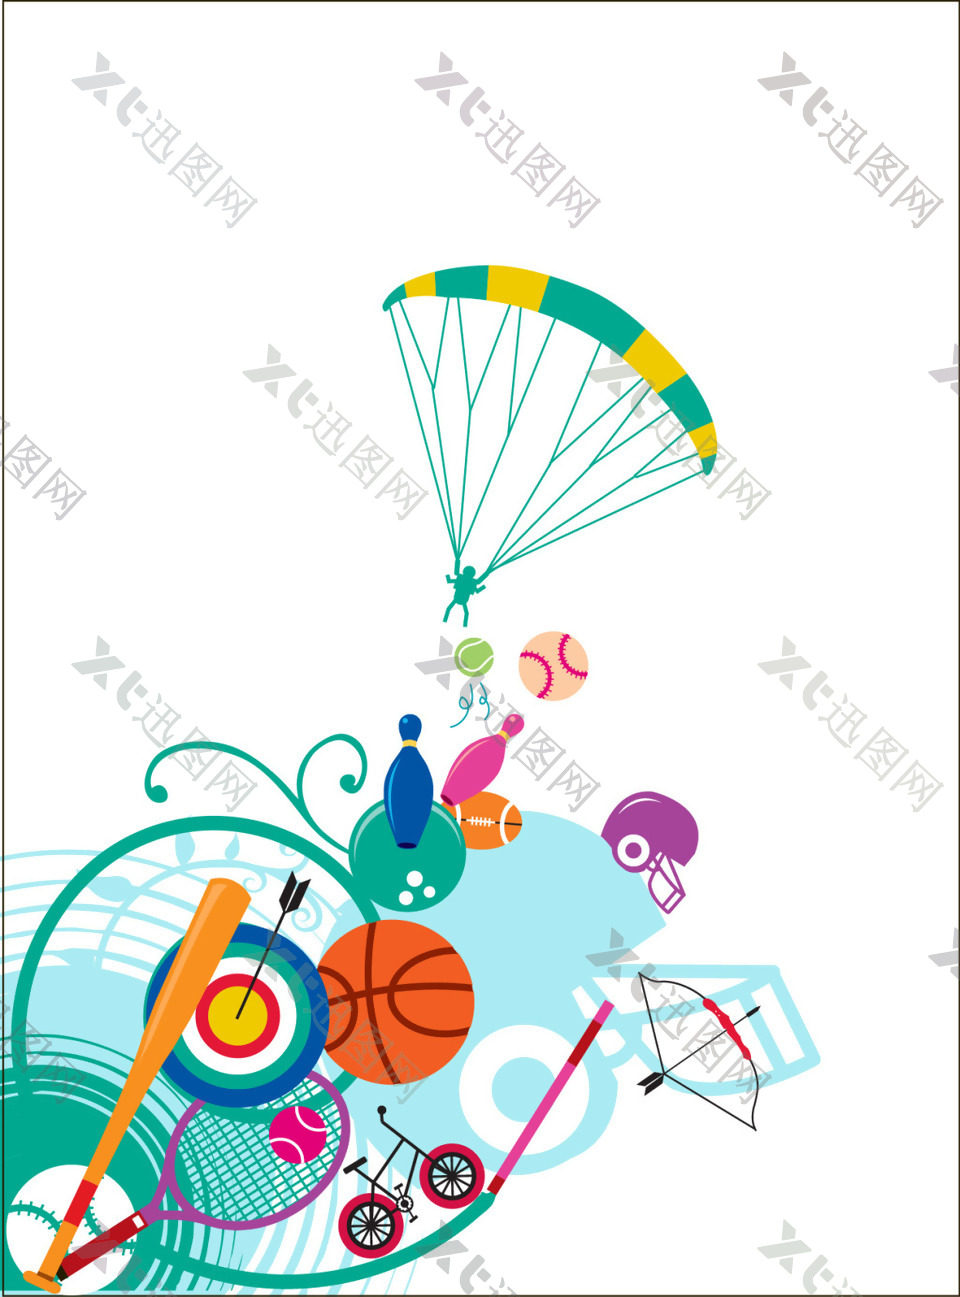 降落伞运动球类素材设计